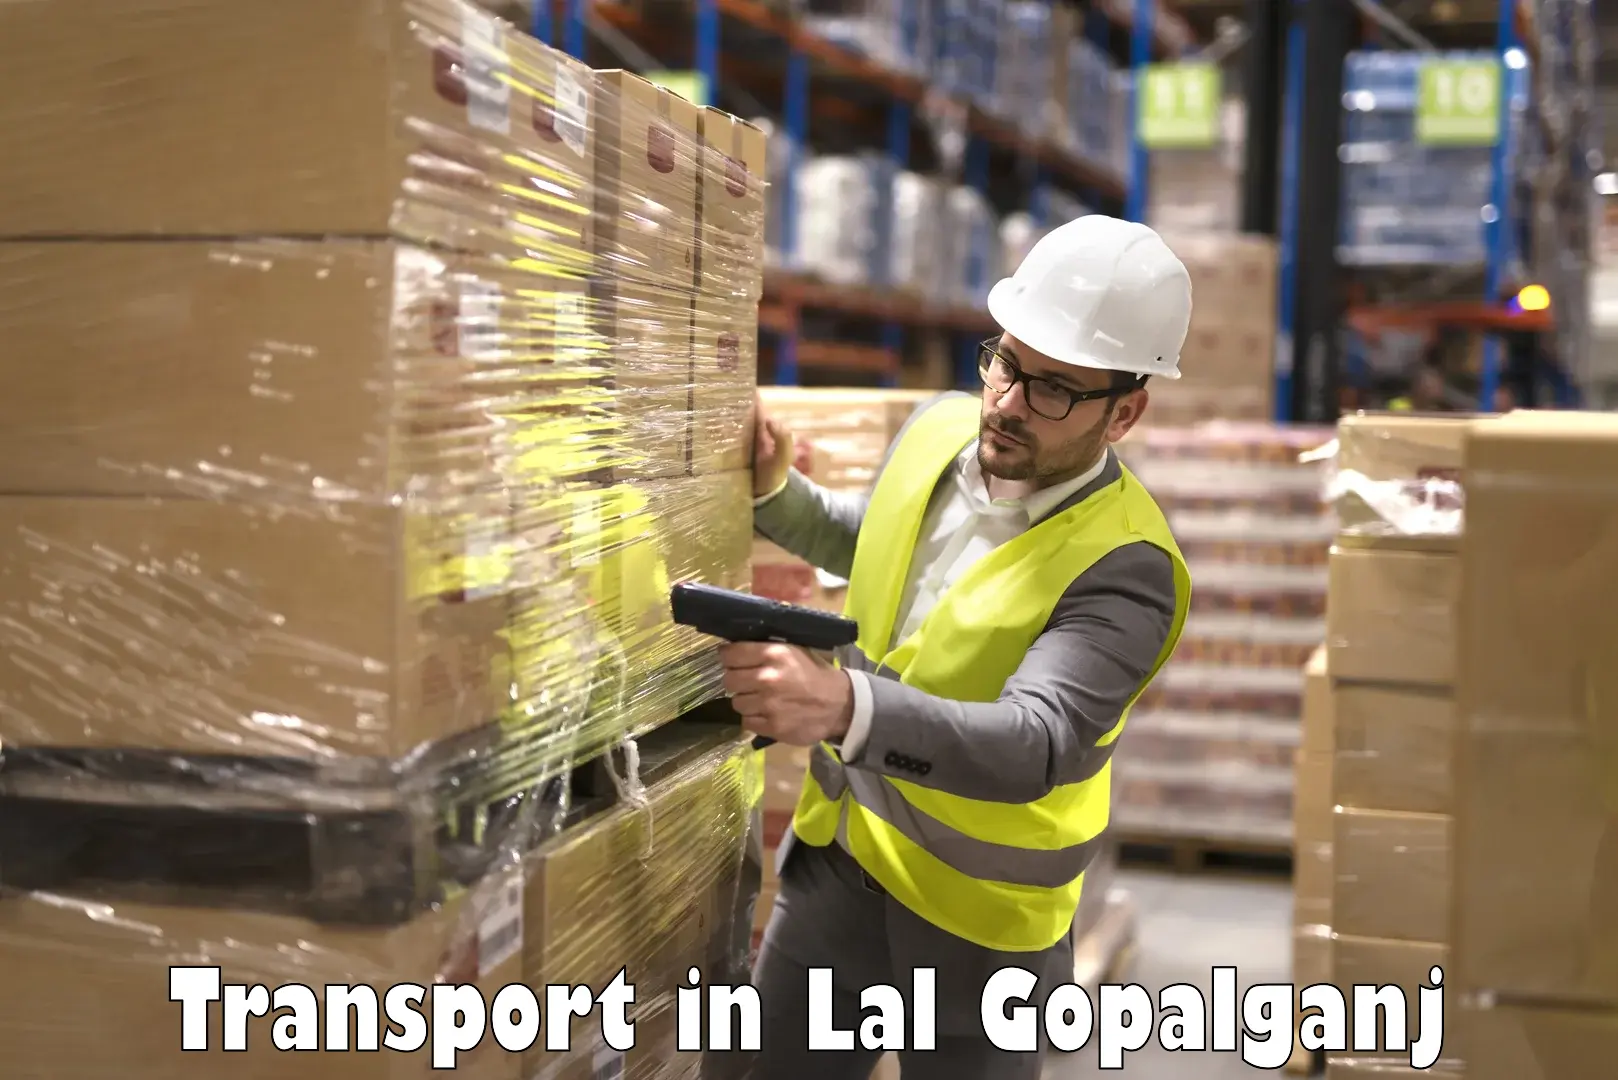 Cargo train transport services in Lal Gopalganj